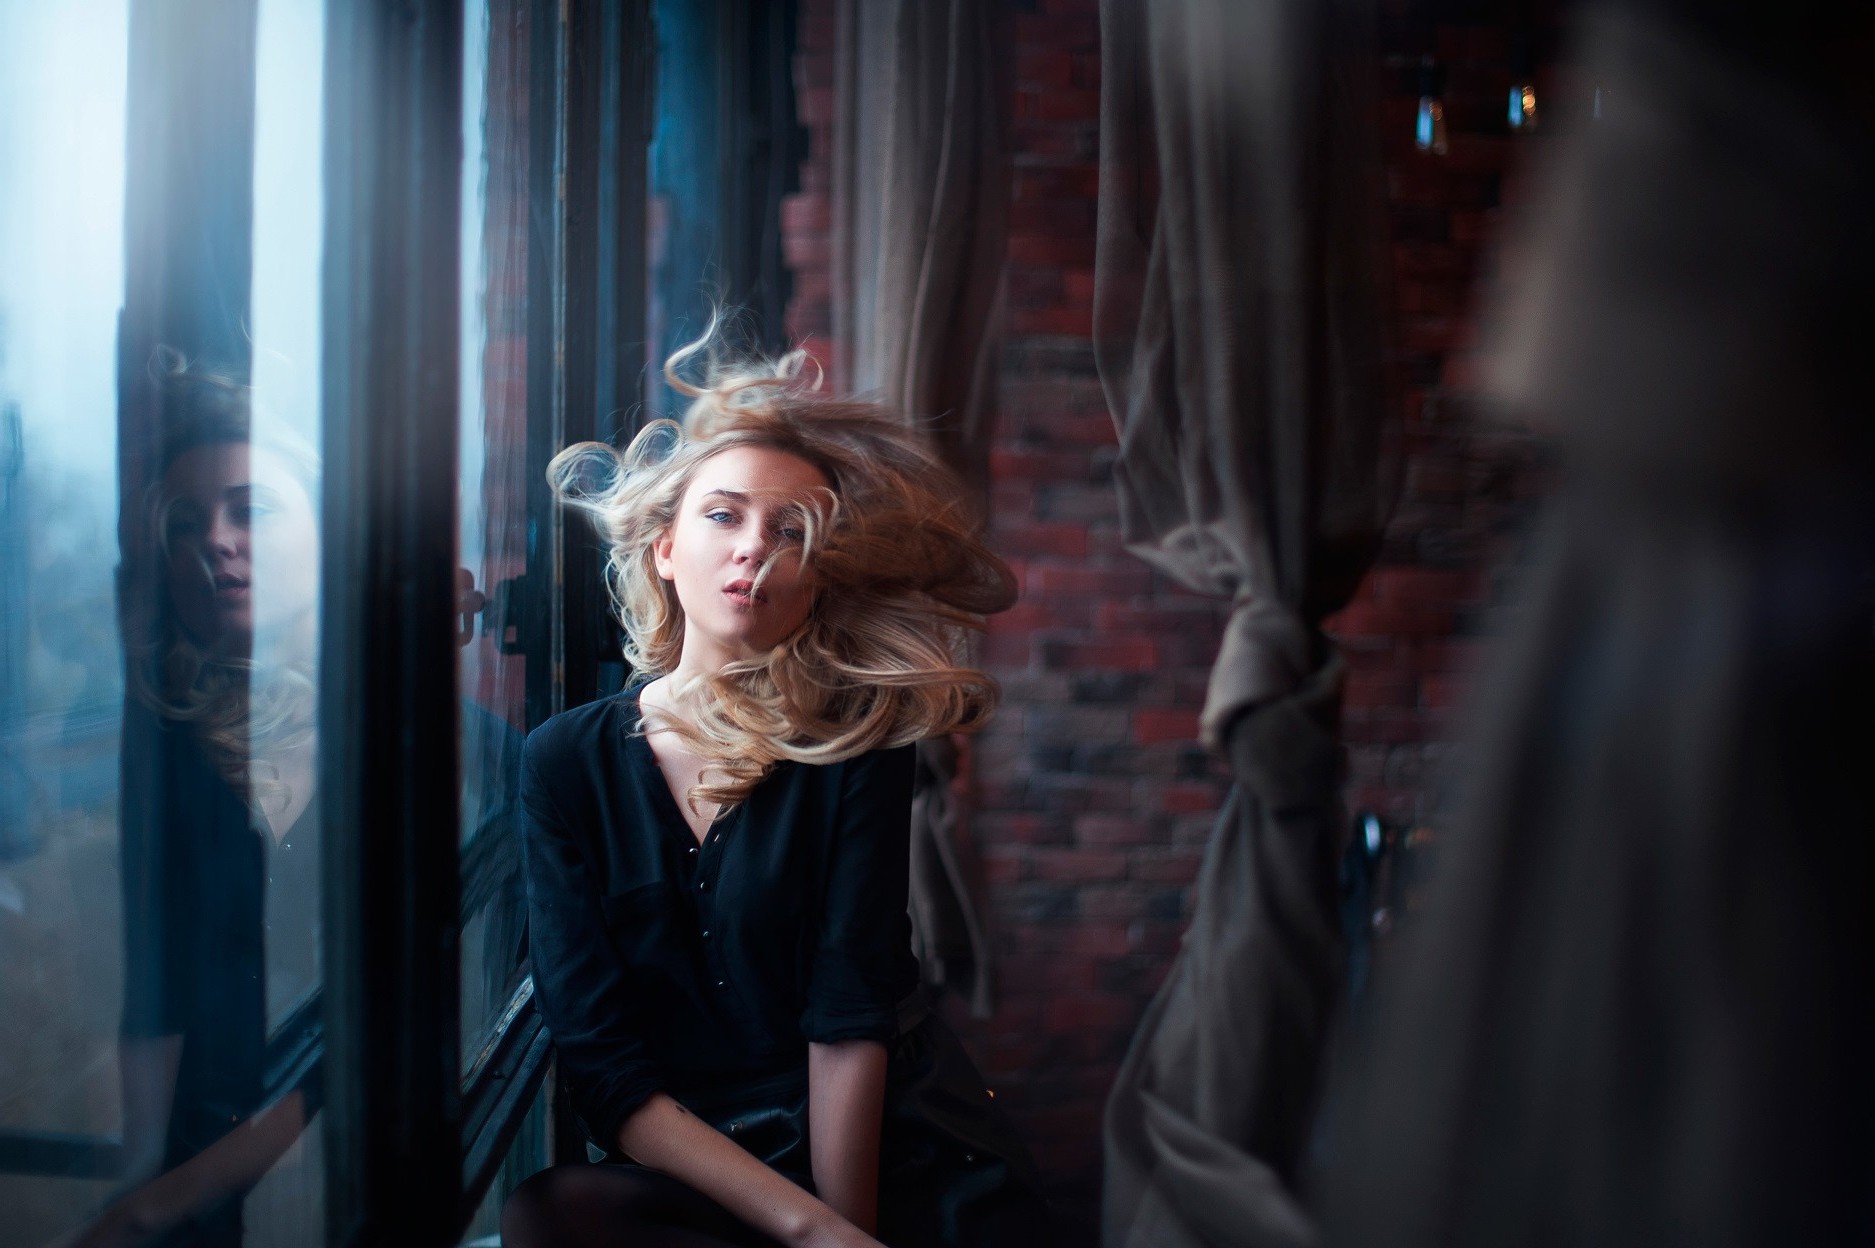 women, Reflection, Model, Window, Blonde Wallpaper